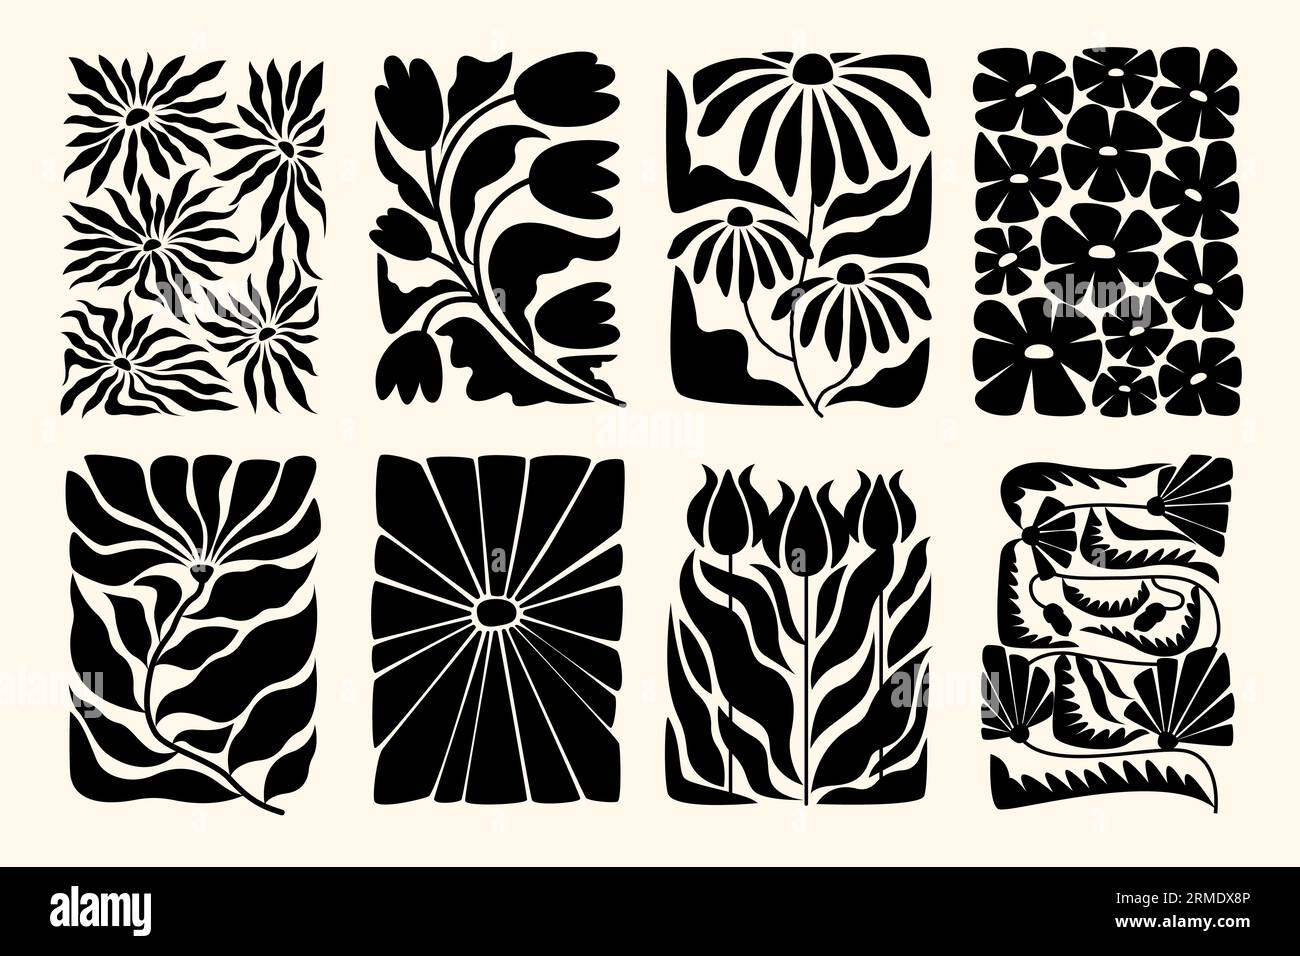 Blumenplakate von Matisse. Abstrakter Kunstdruck mit floralen Elementen der Natur, skandinavische Boho-Groovy abstrakte Kunst im Retro-Stil Vektorsatz Stock Vektor